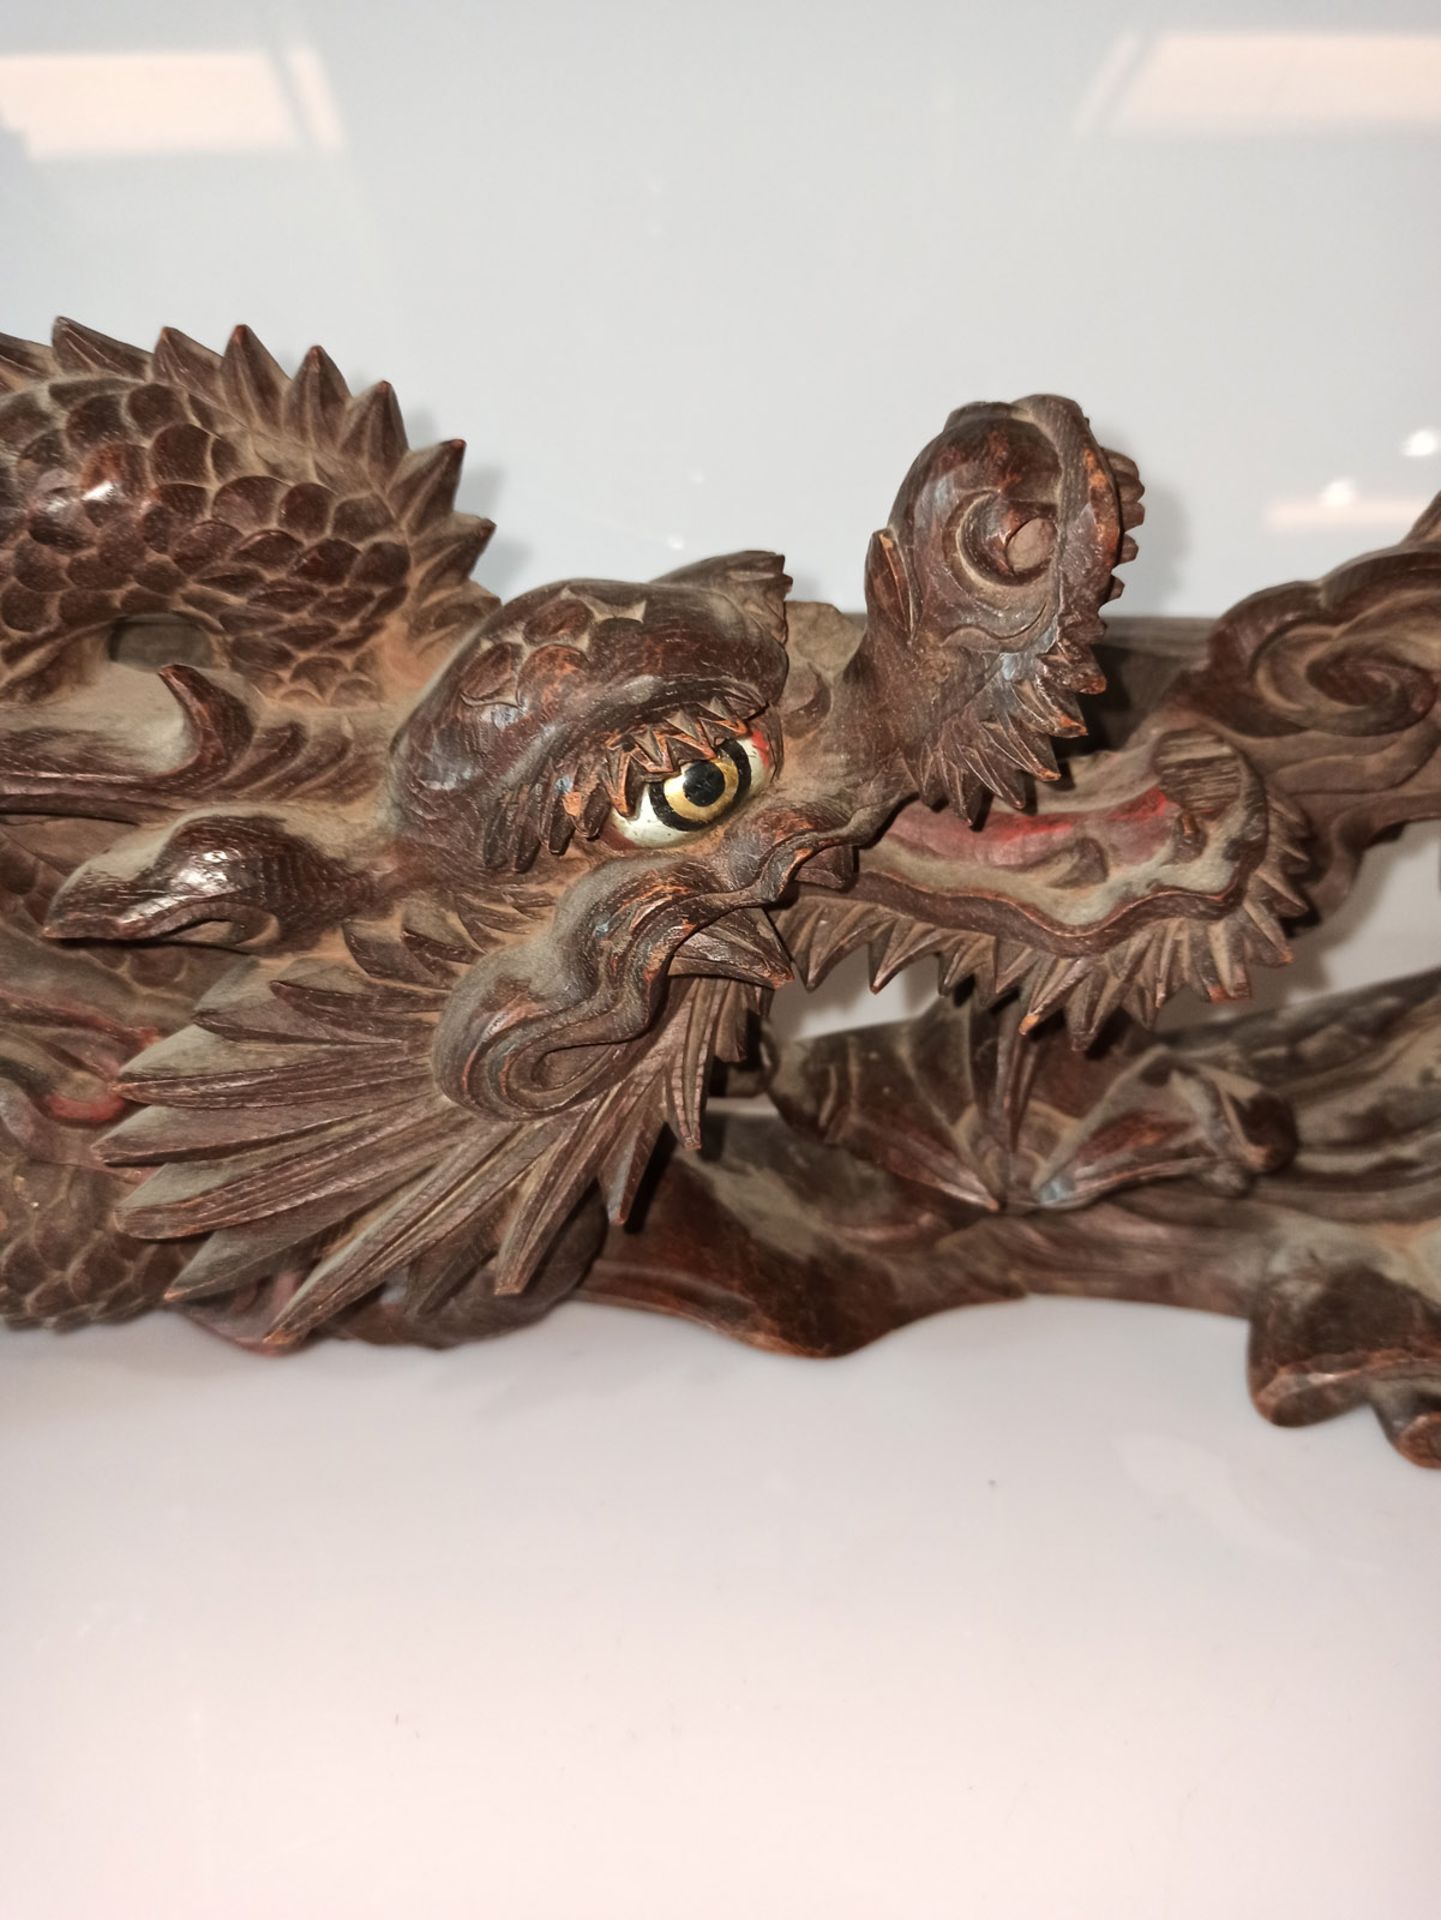 Zierleiste aus Holz mit geschnitztem Dekor eines sich windenden Drachens zwischen Gischt teils mit  - Bild 3 aus 5